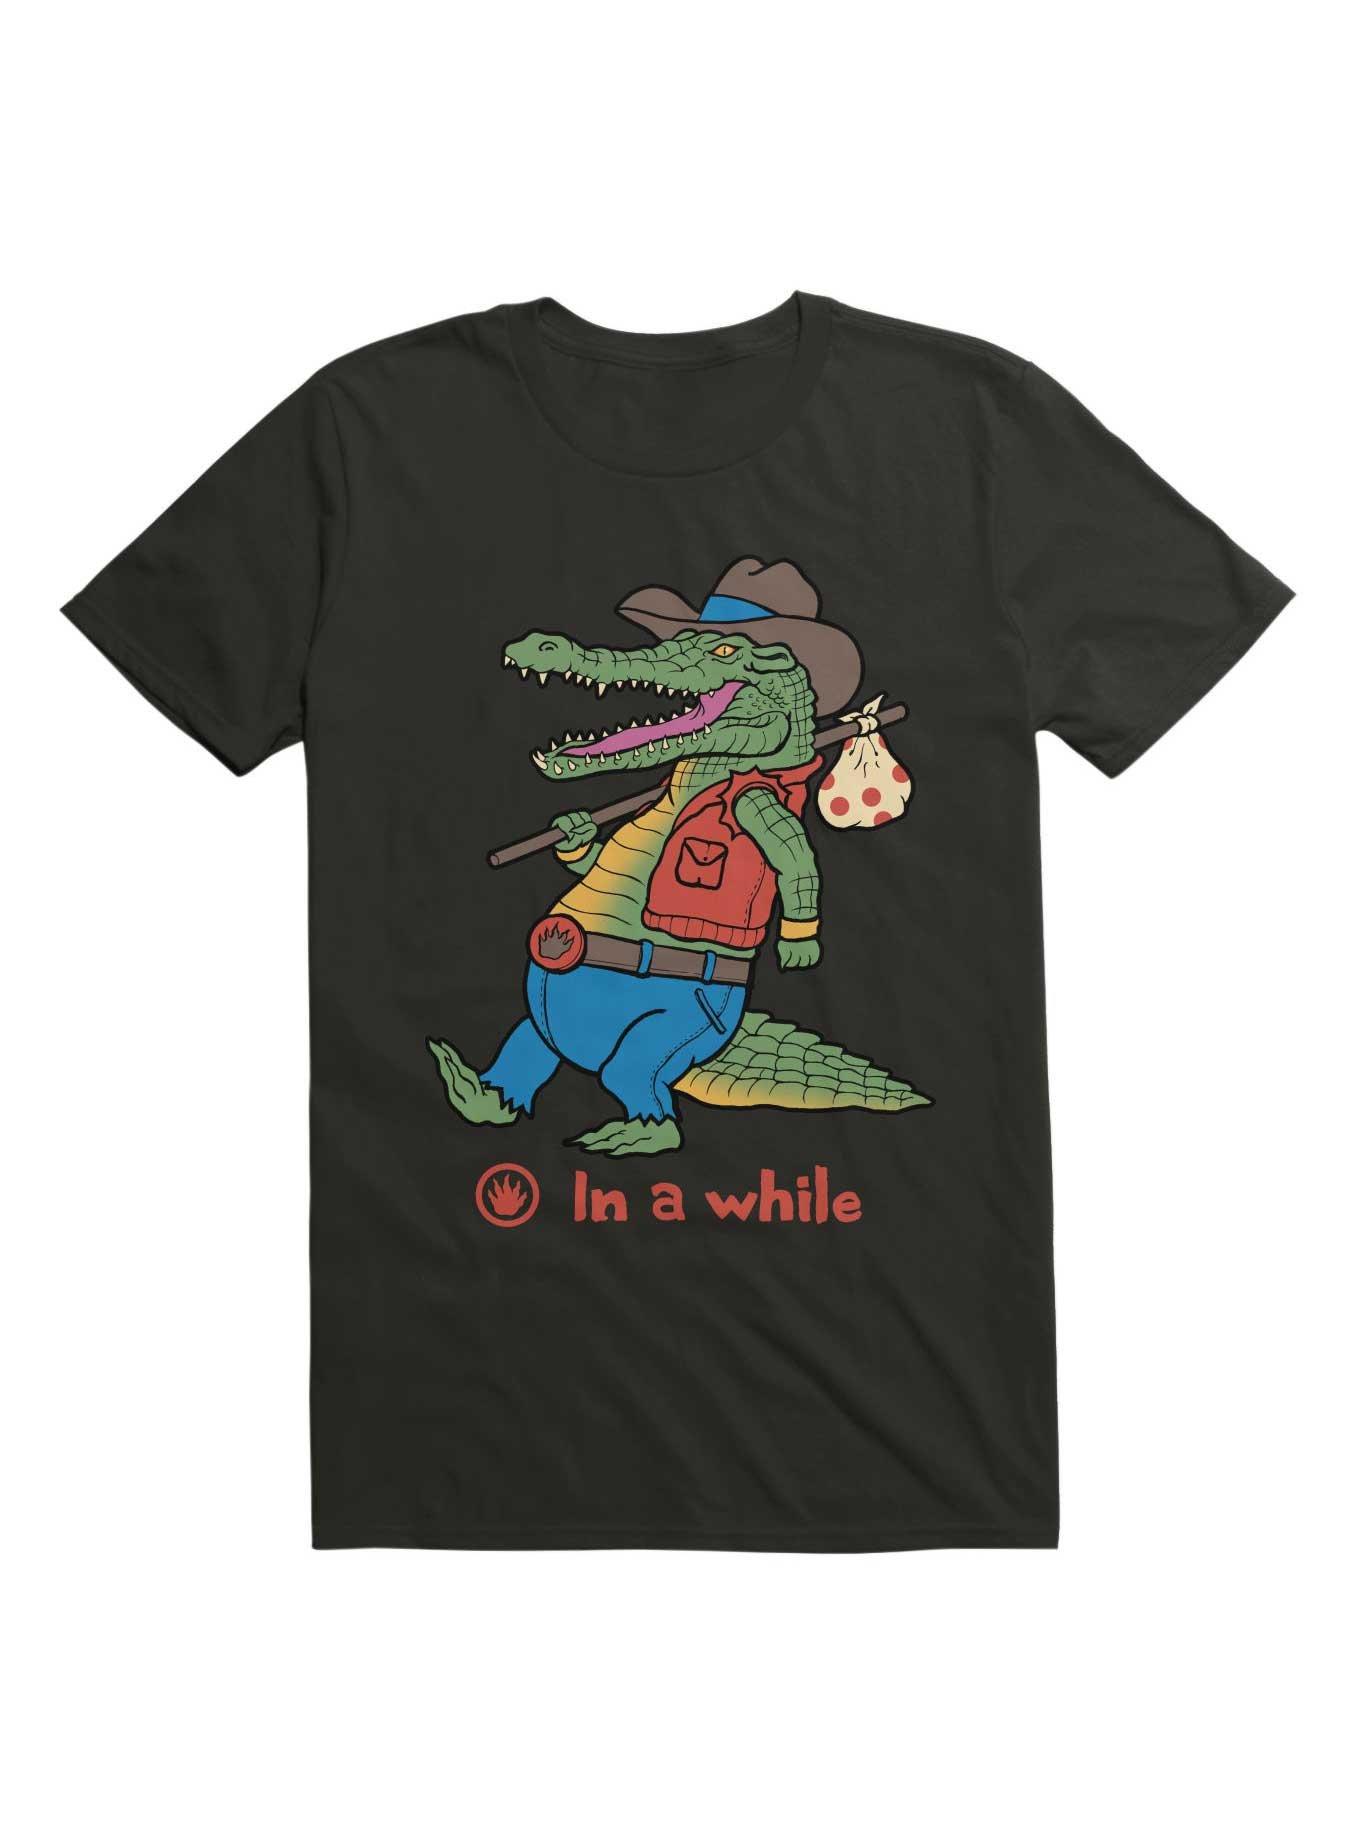 A While Crocodile! T-Shirt